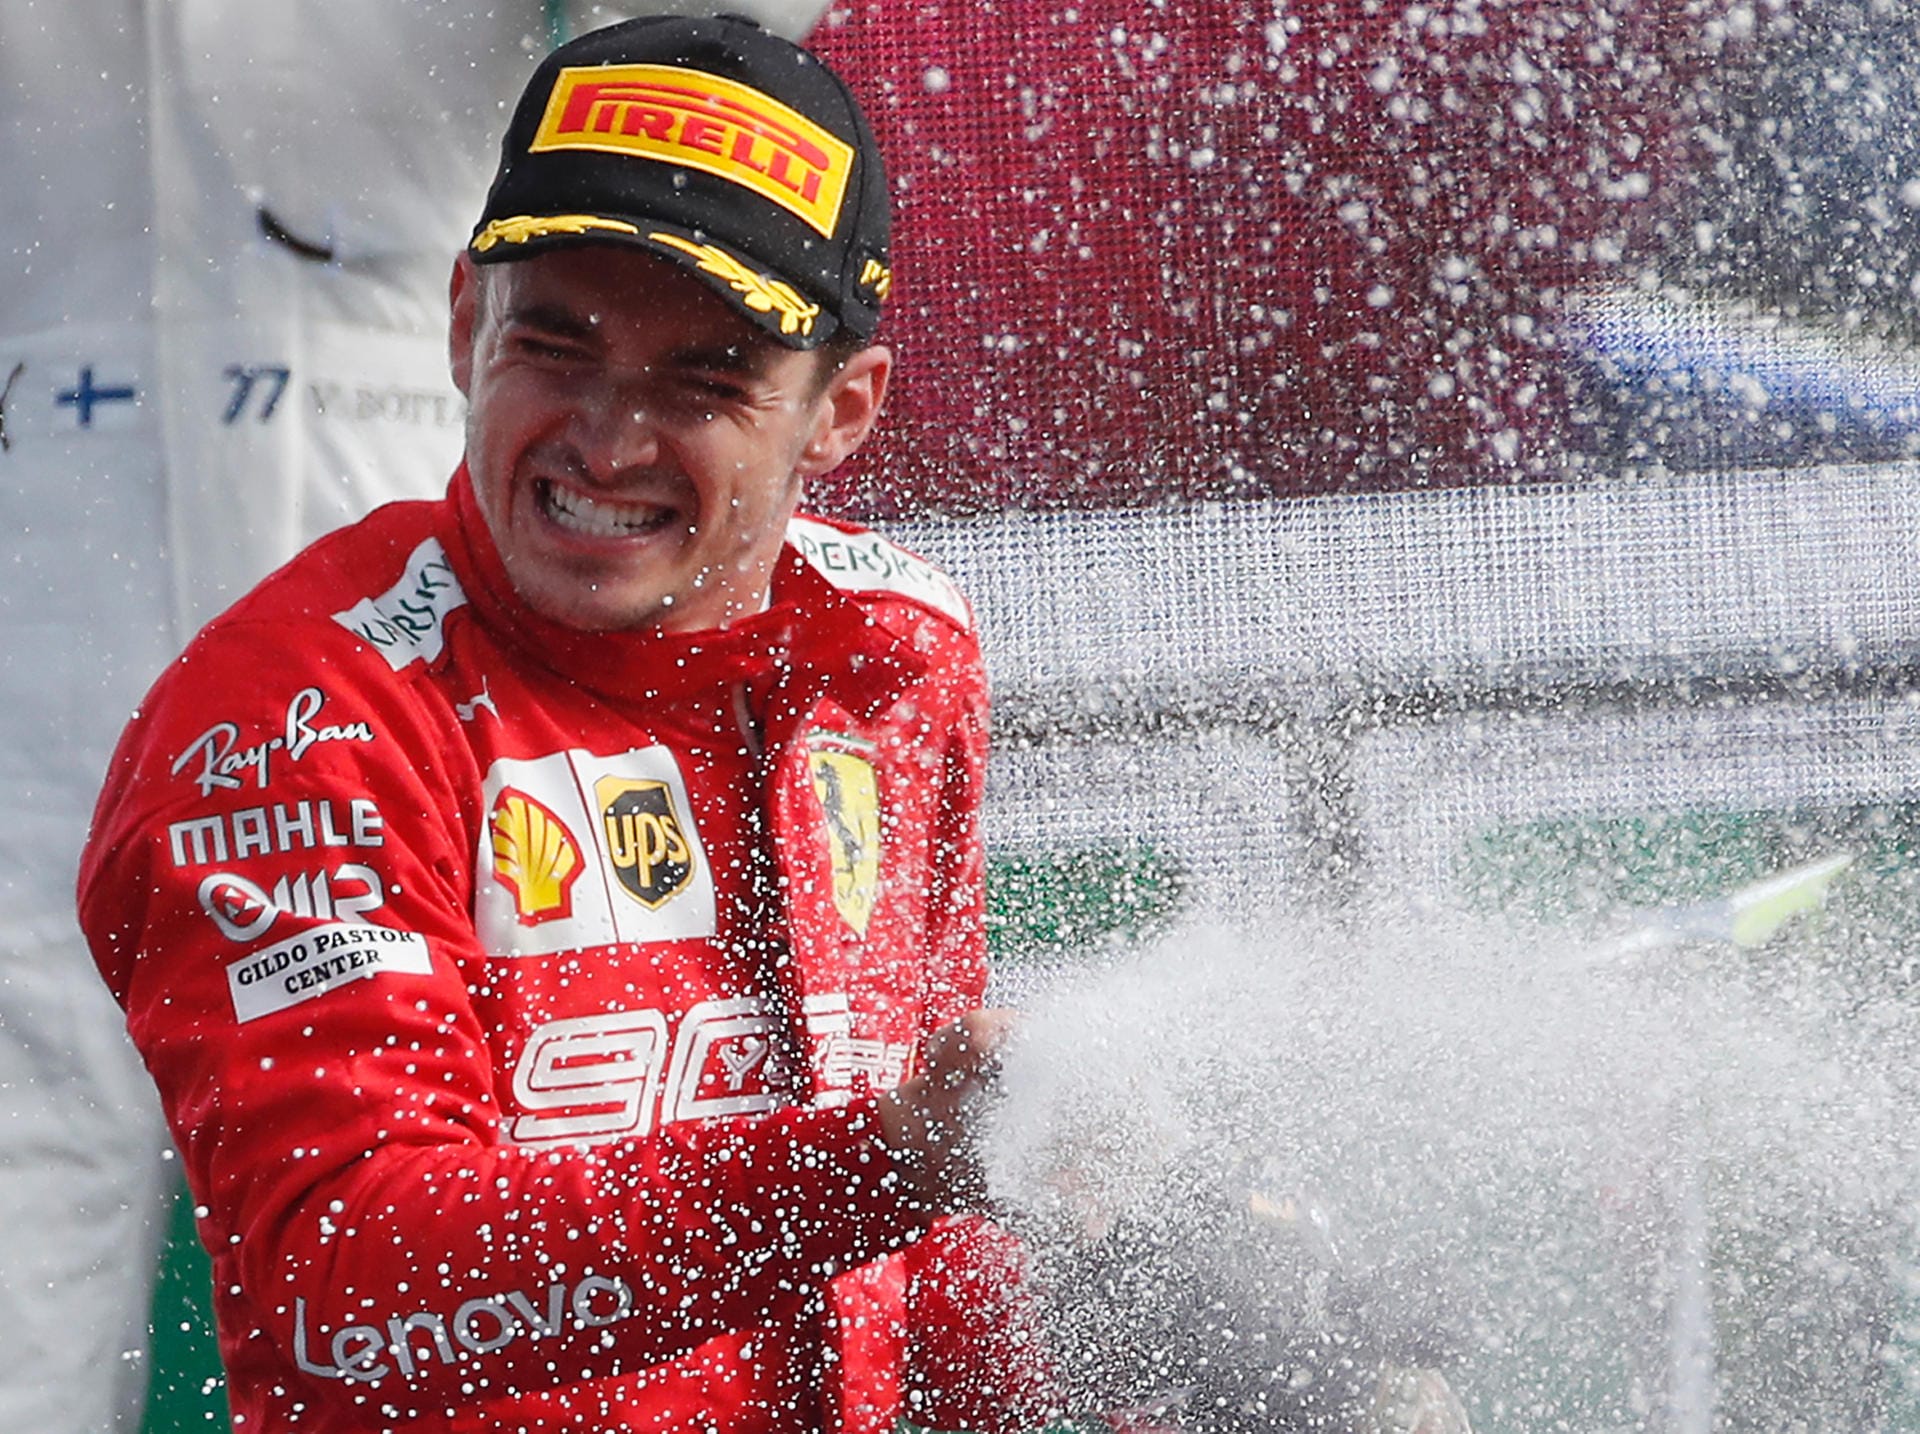 Charles Lecler feiert seinen Sieg in Monza ausgiebig. Es war der erste sieg beim Heim-Grand-Prix für Ferrari seit dem Jahr 2010.